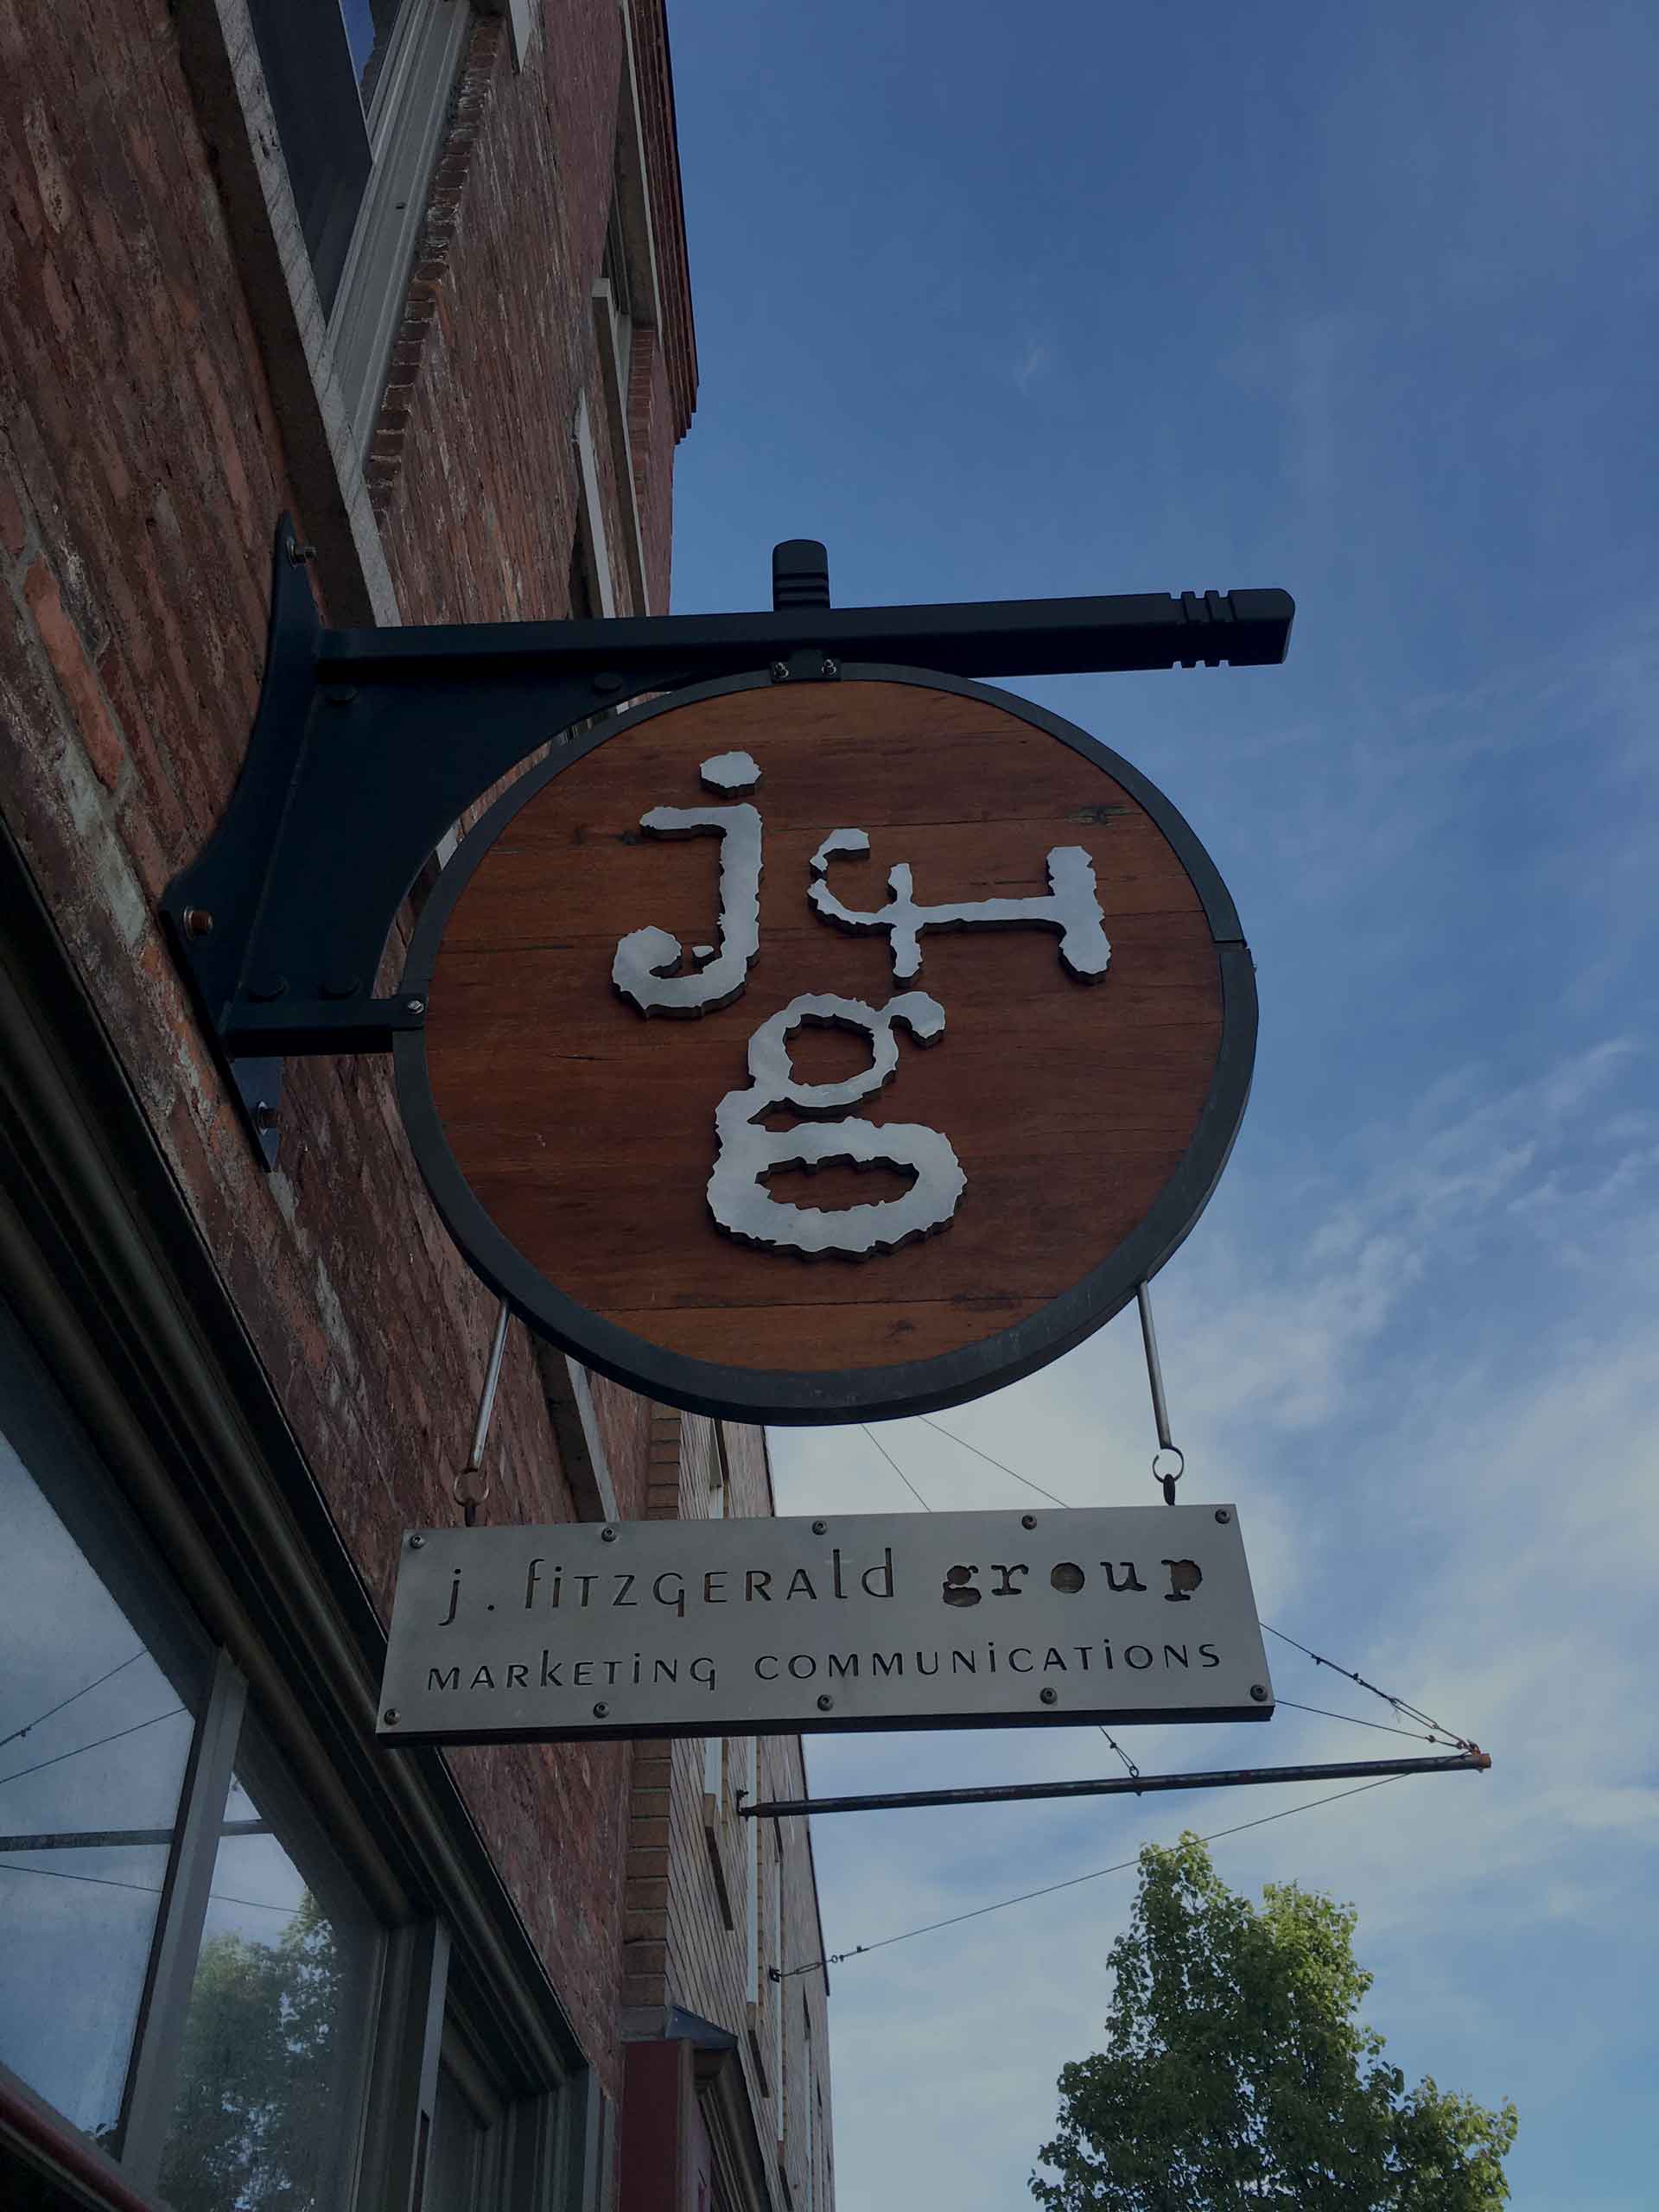 J. Fitzgerald Group - Lockport, NY